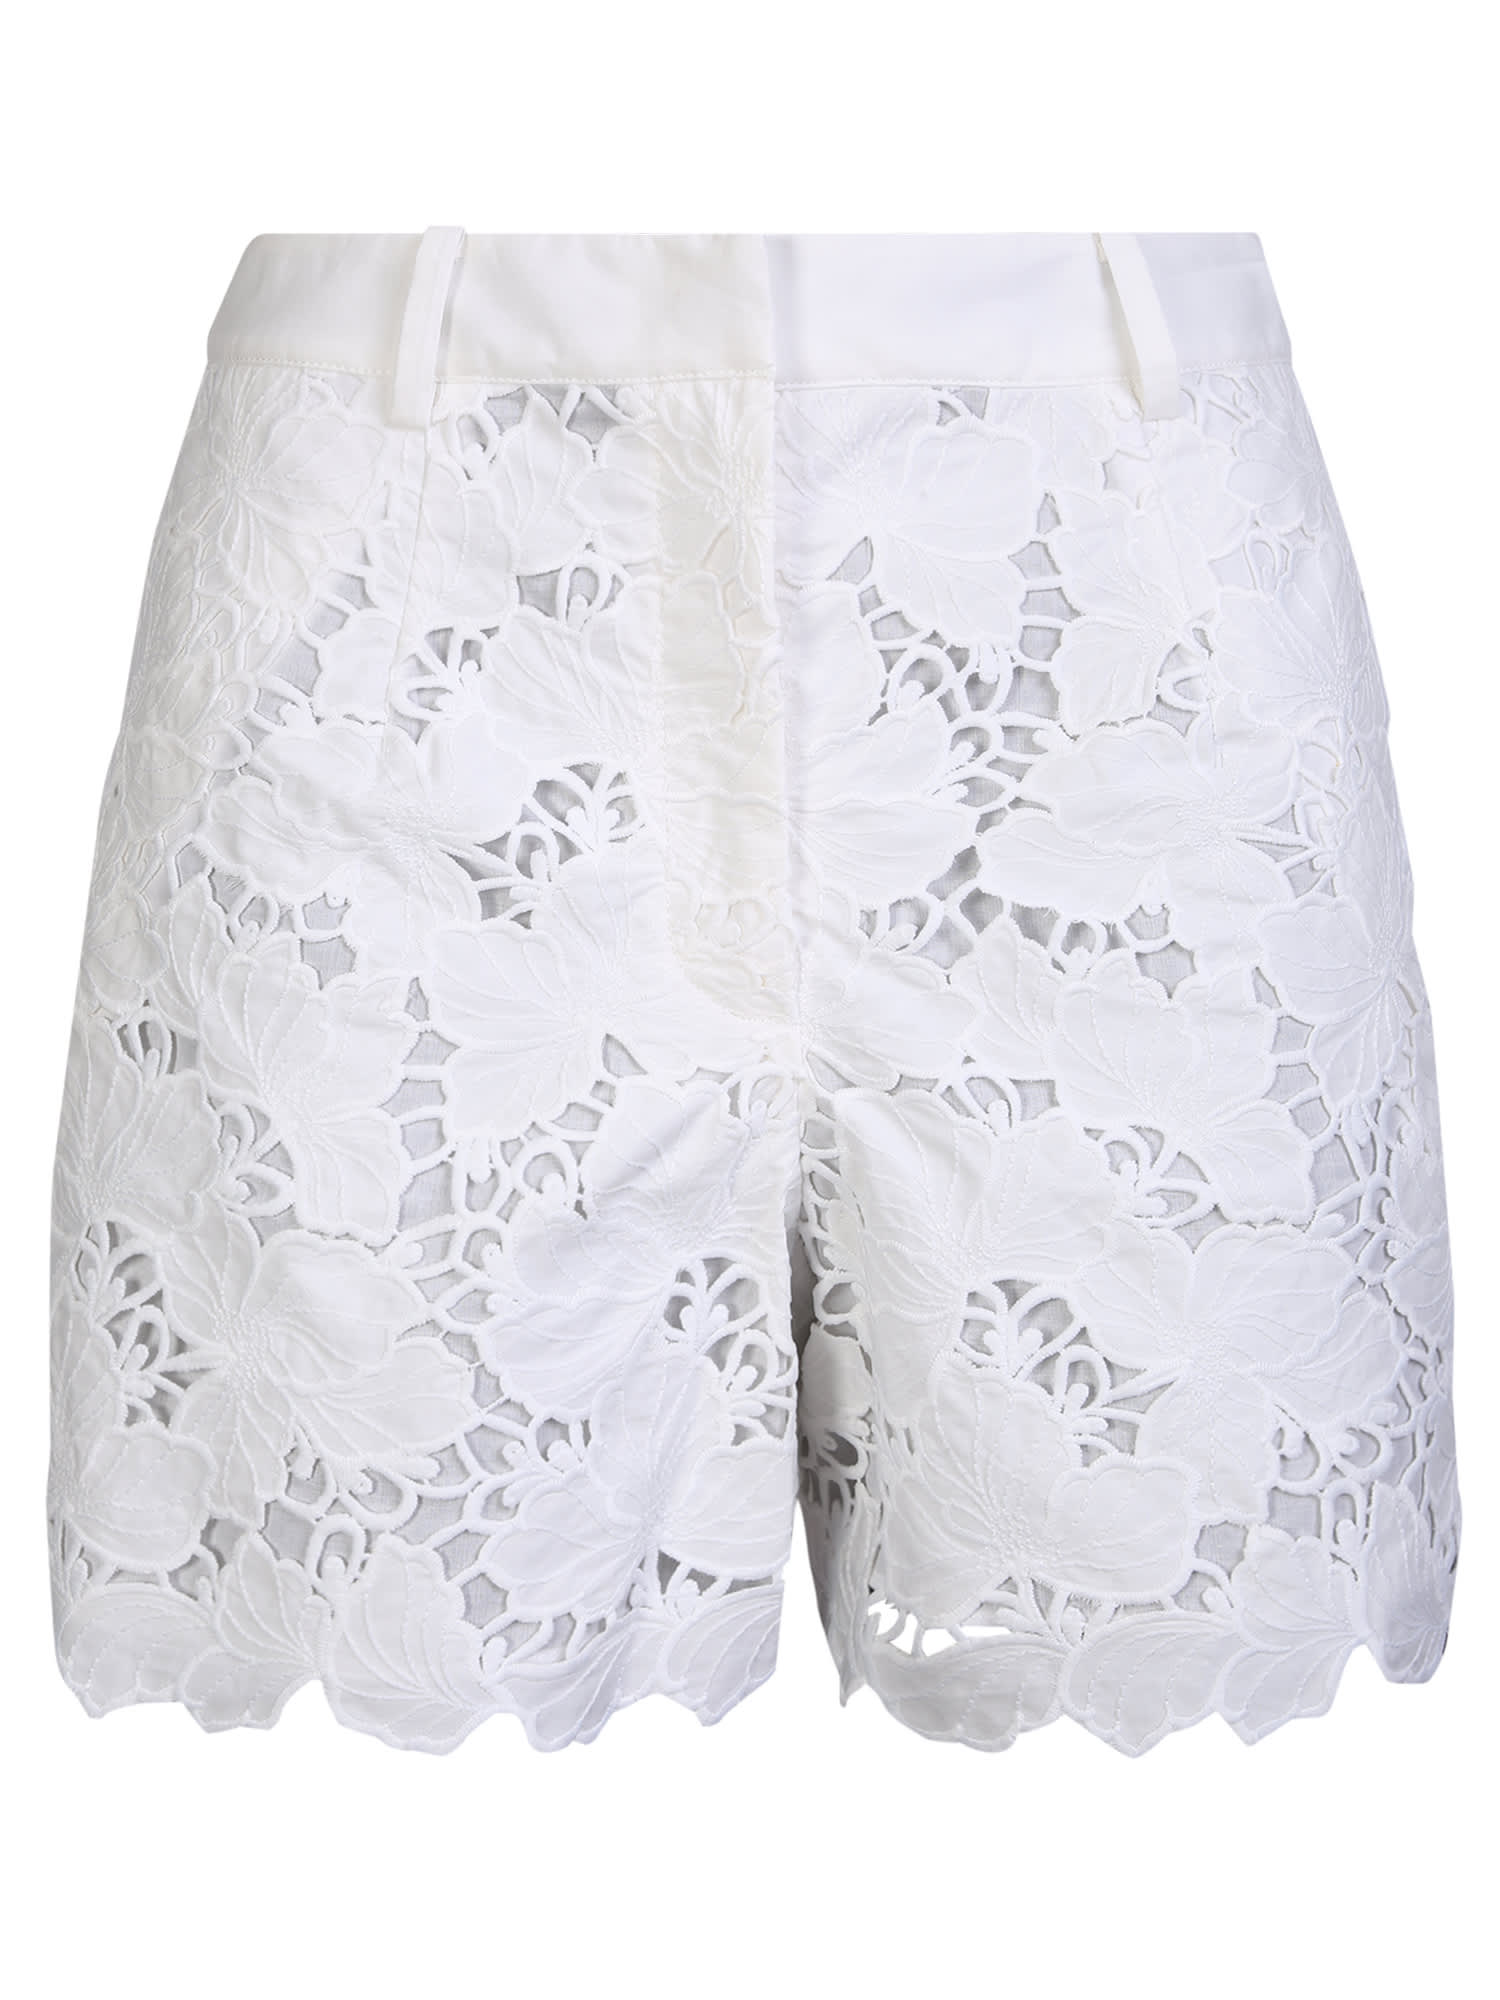 Cotton Lace White Shorts